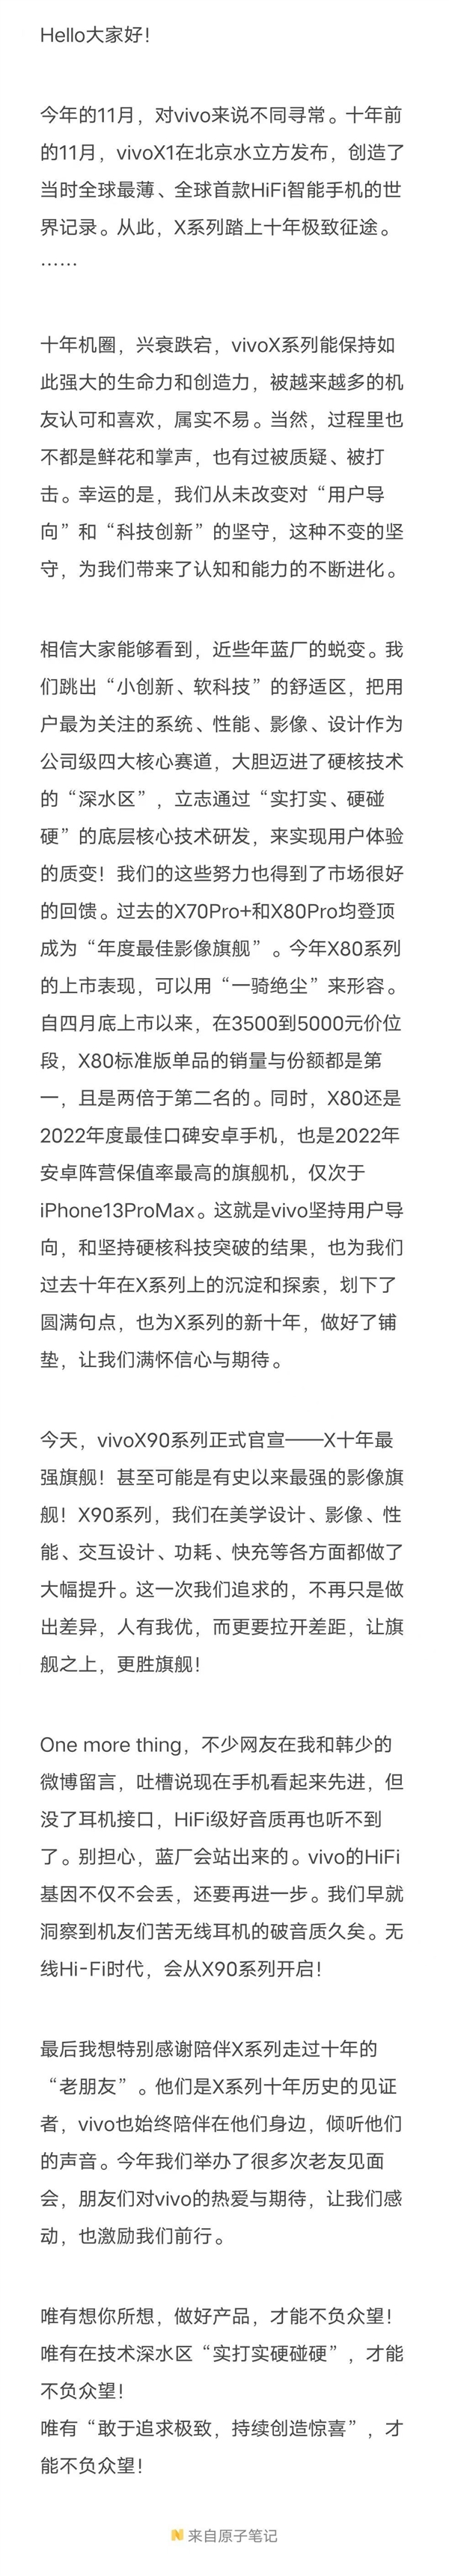 vivo黄韬：X80成为今年安卓保值率最高的机型 仅次于iPhone 13 Pro Max